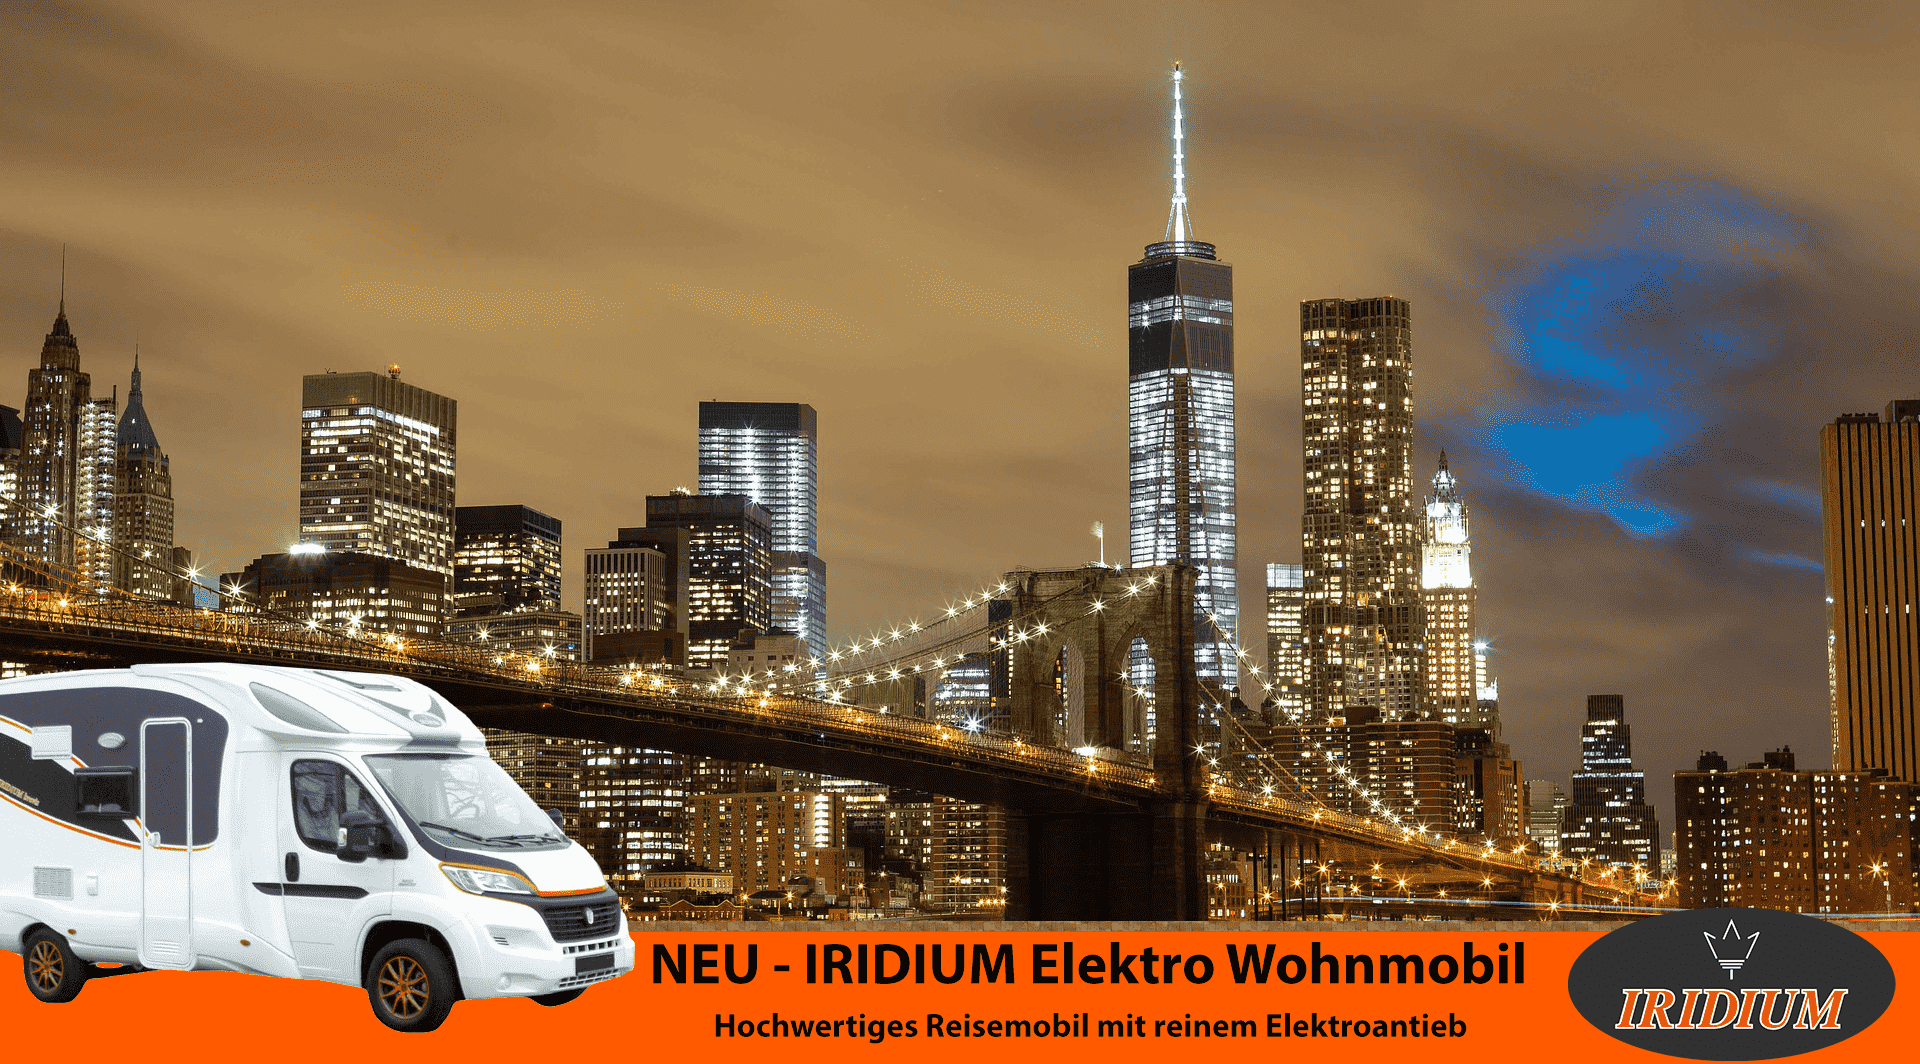 Iridium Wohnmobile - Hersteller von elektrischen Wohnmobilen (Quelle: www.iridium-wohnmobile.de)